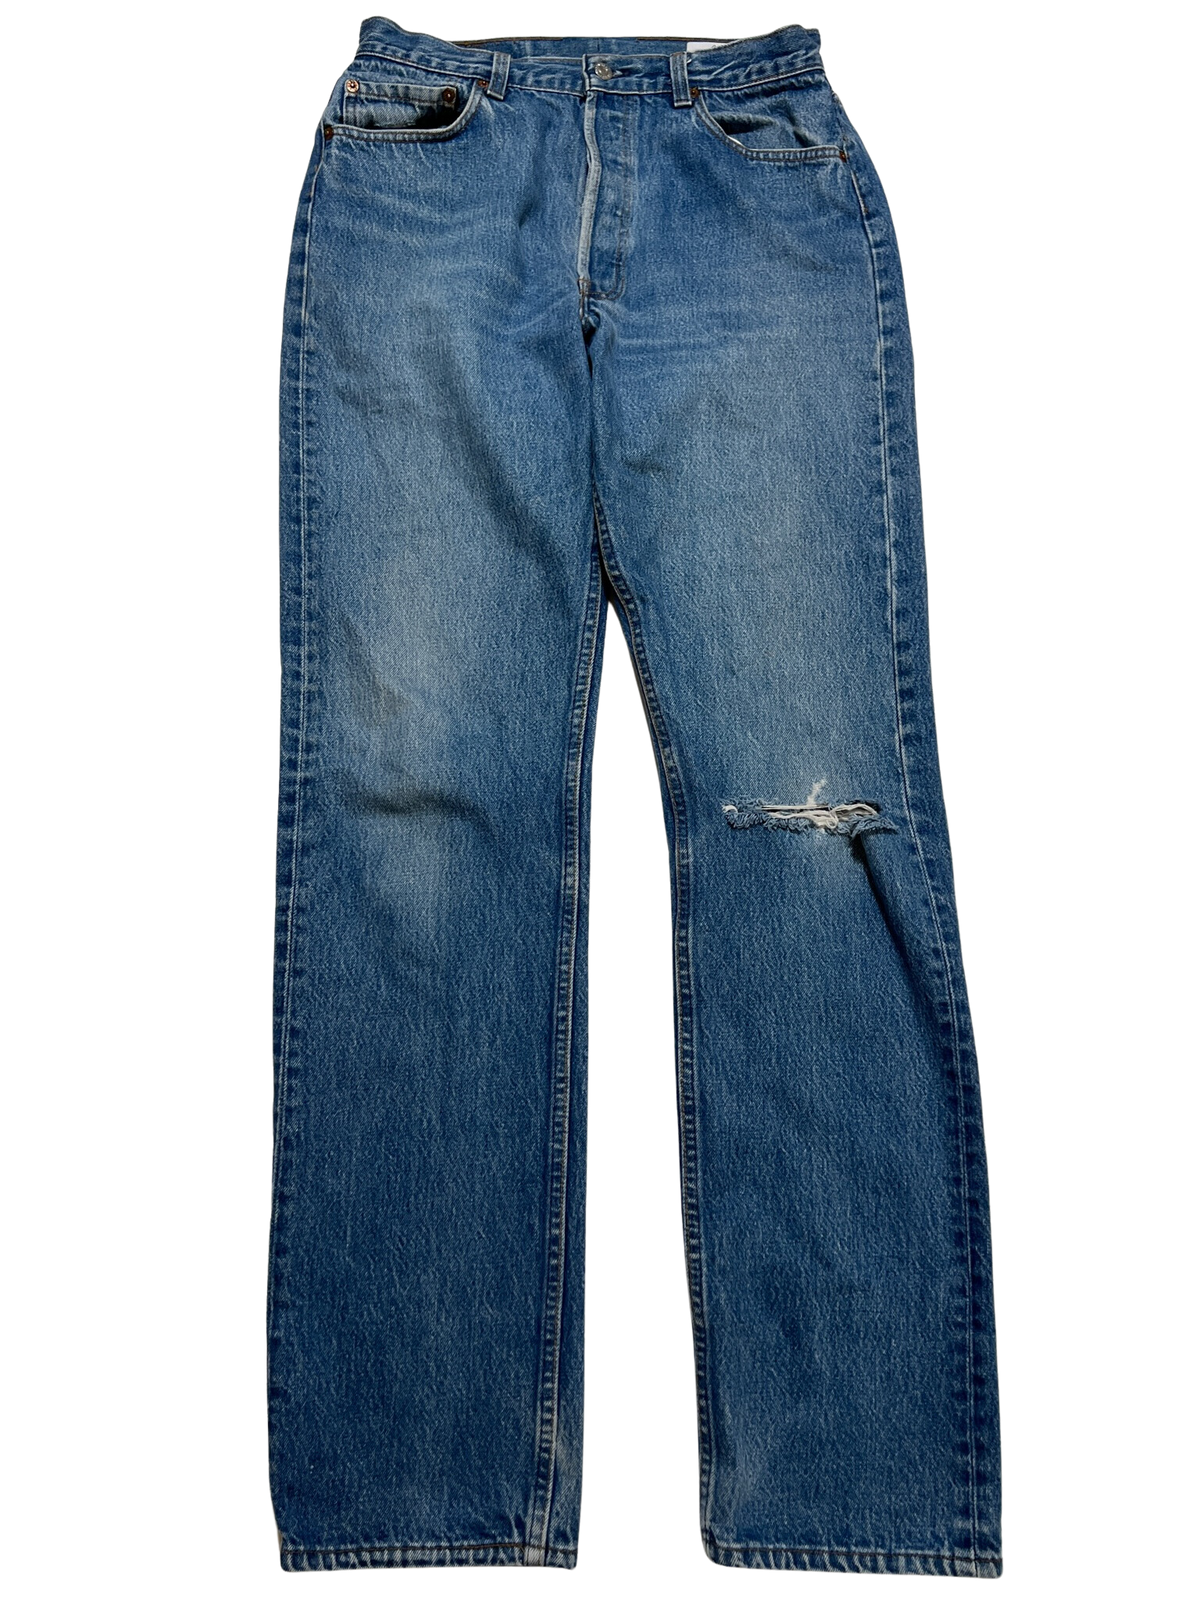 Levis- Dark Wash Distressed Jeans